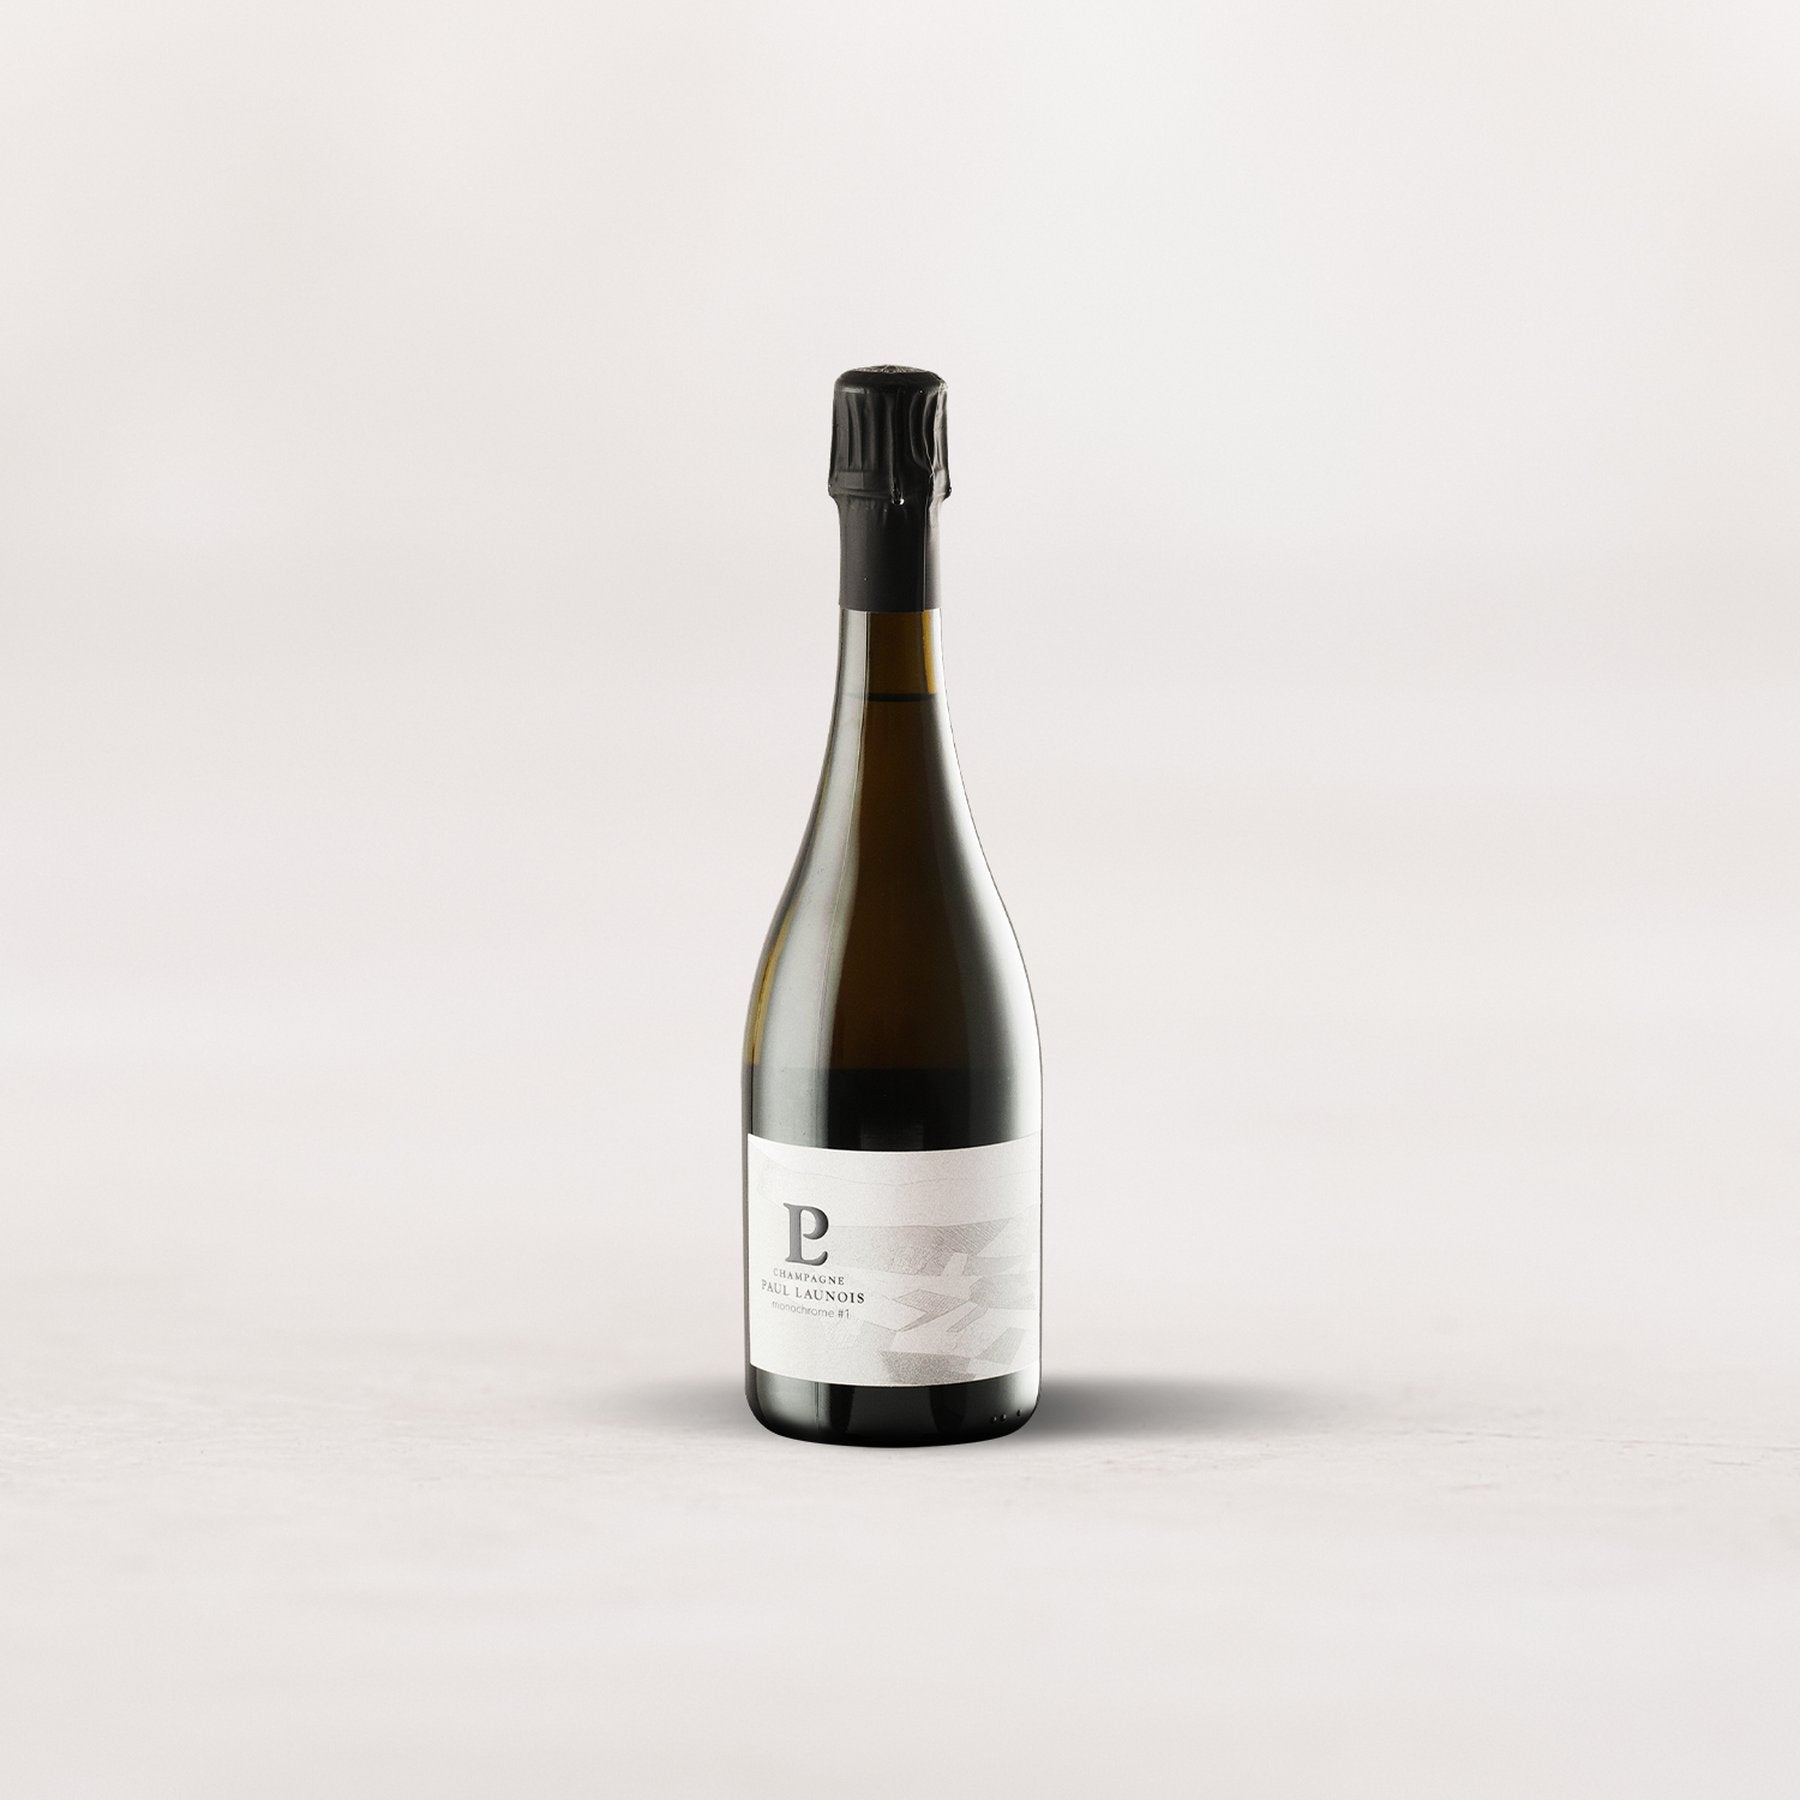 Champagne Paul Launois, “Monochrome #1” Blanc de Blancs